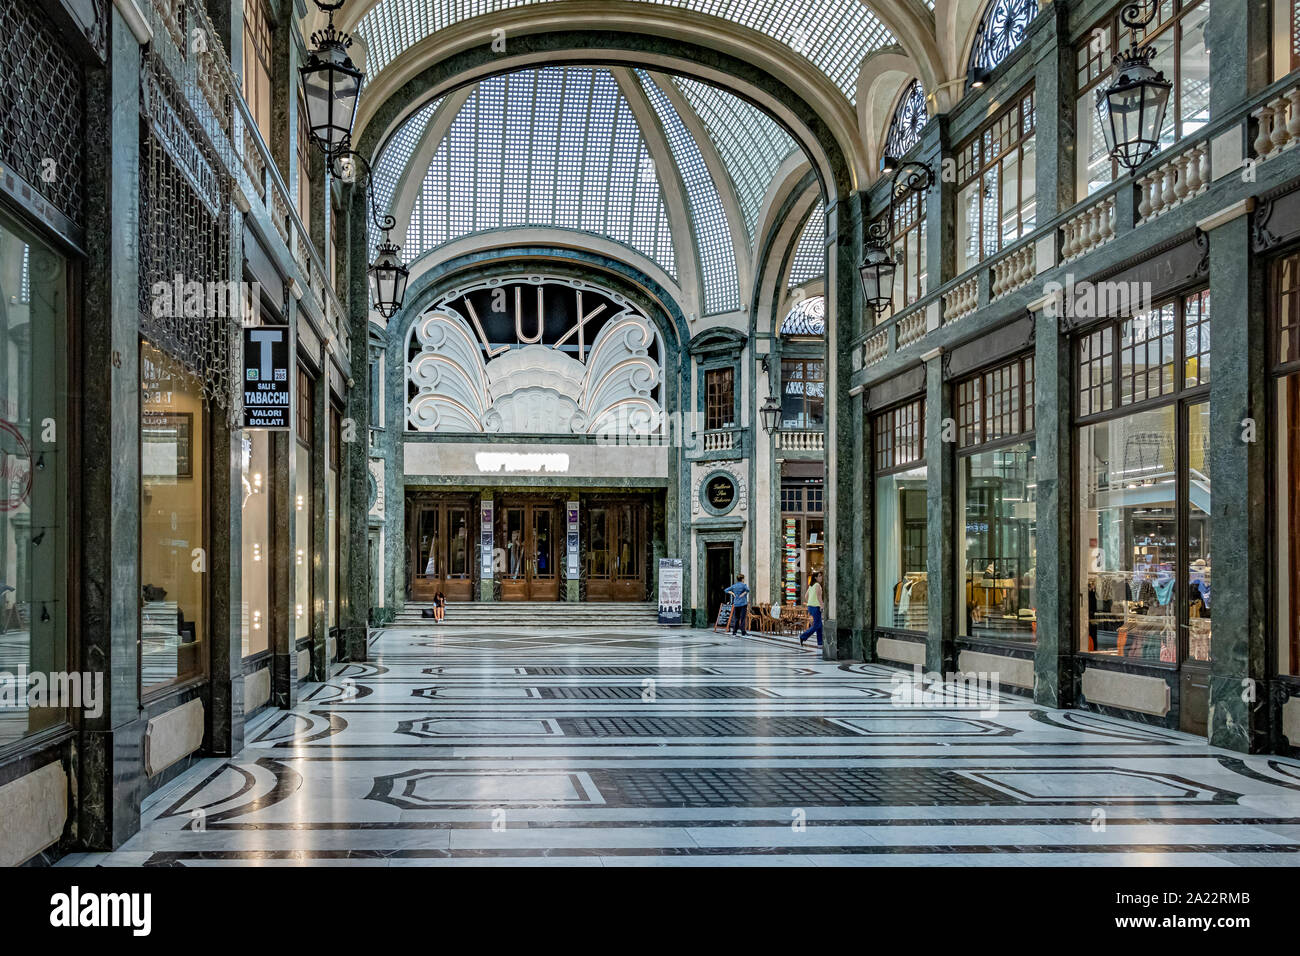 El cine Lux art deco en el interior del cielorraso de cristal hermoso arcade Galleria San Federico en Turín, Italia Foto de stock